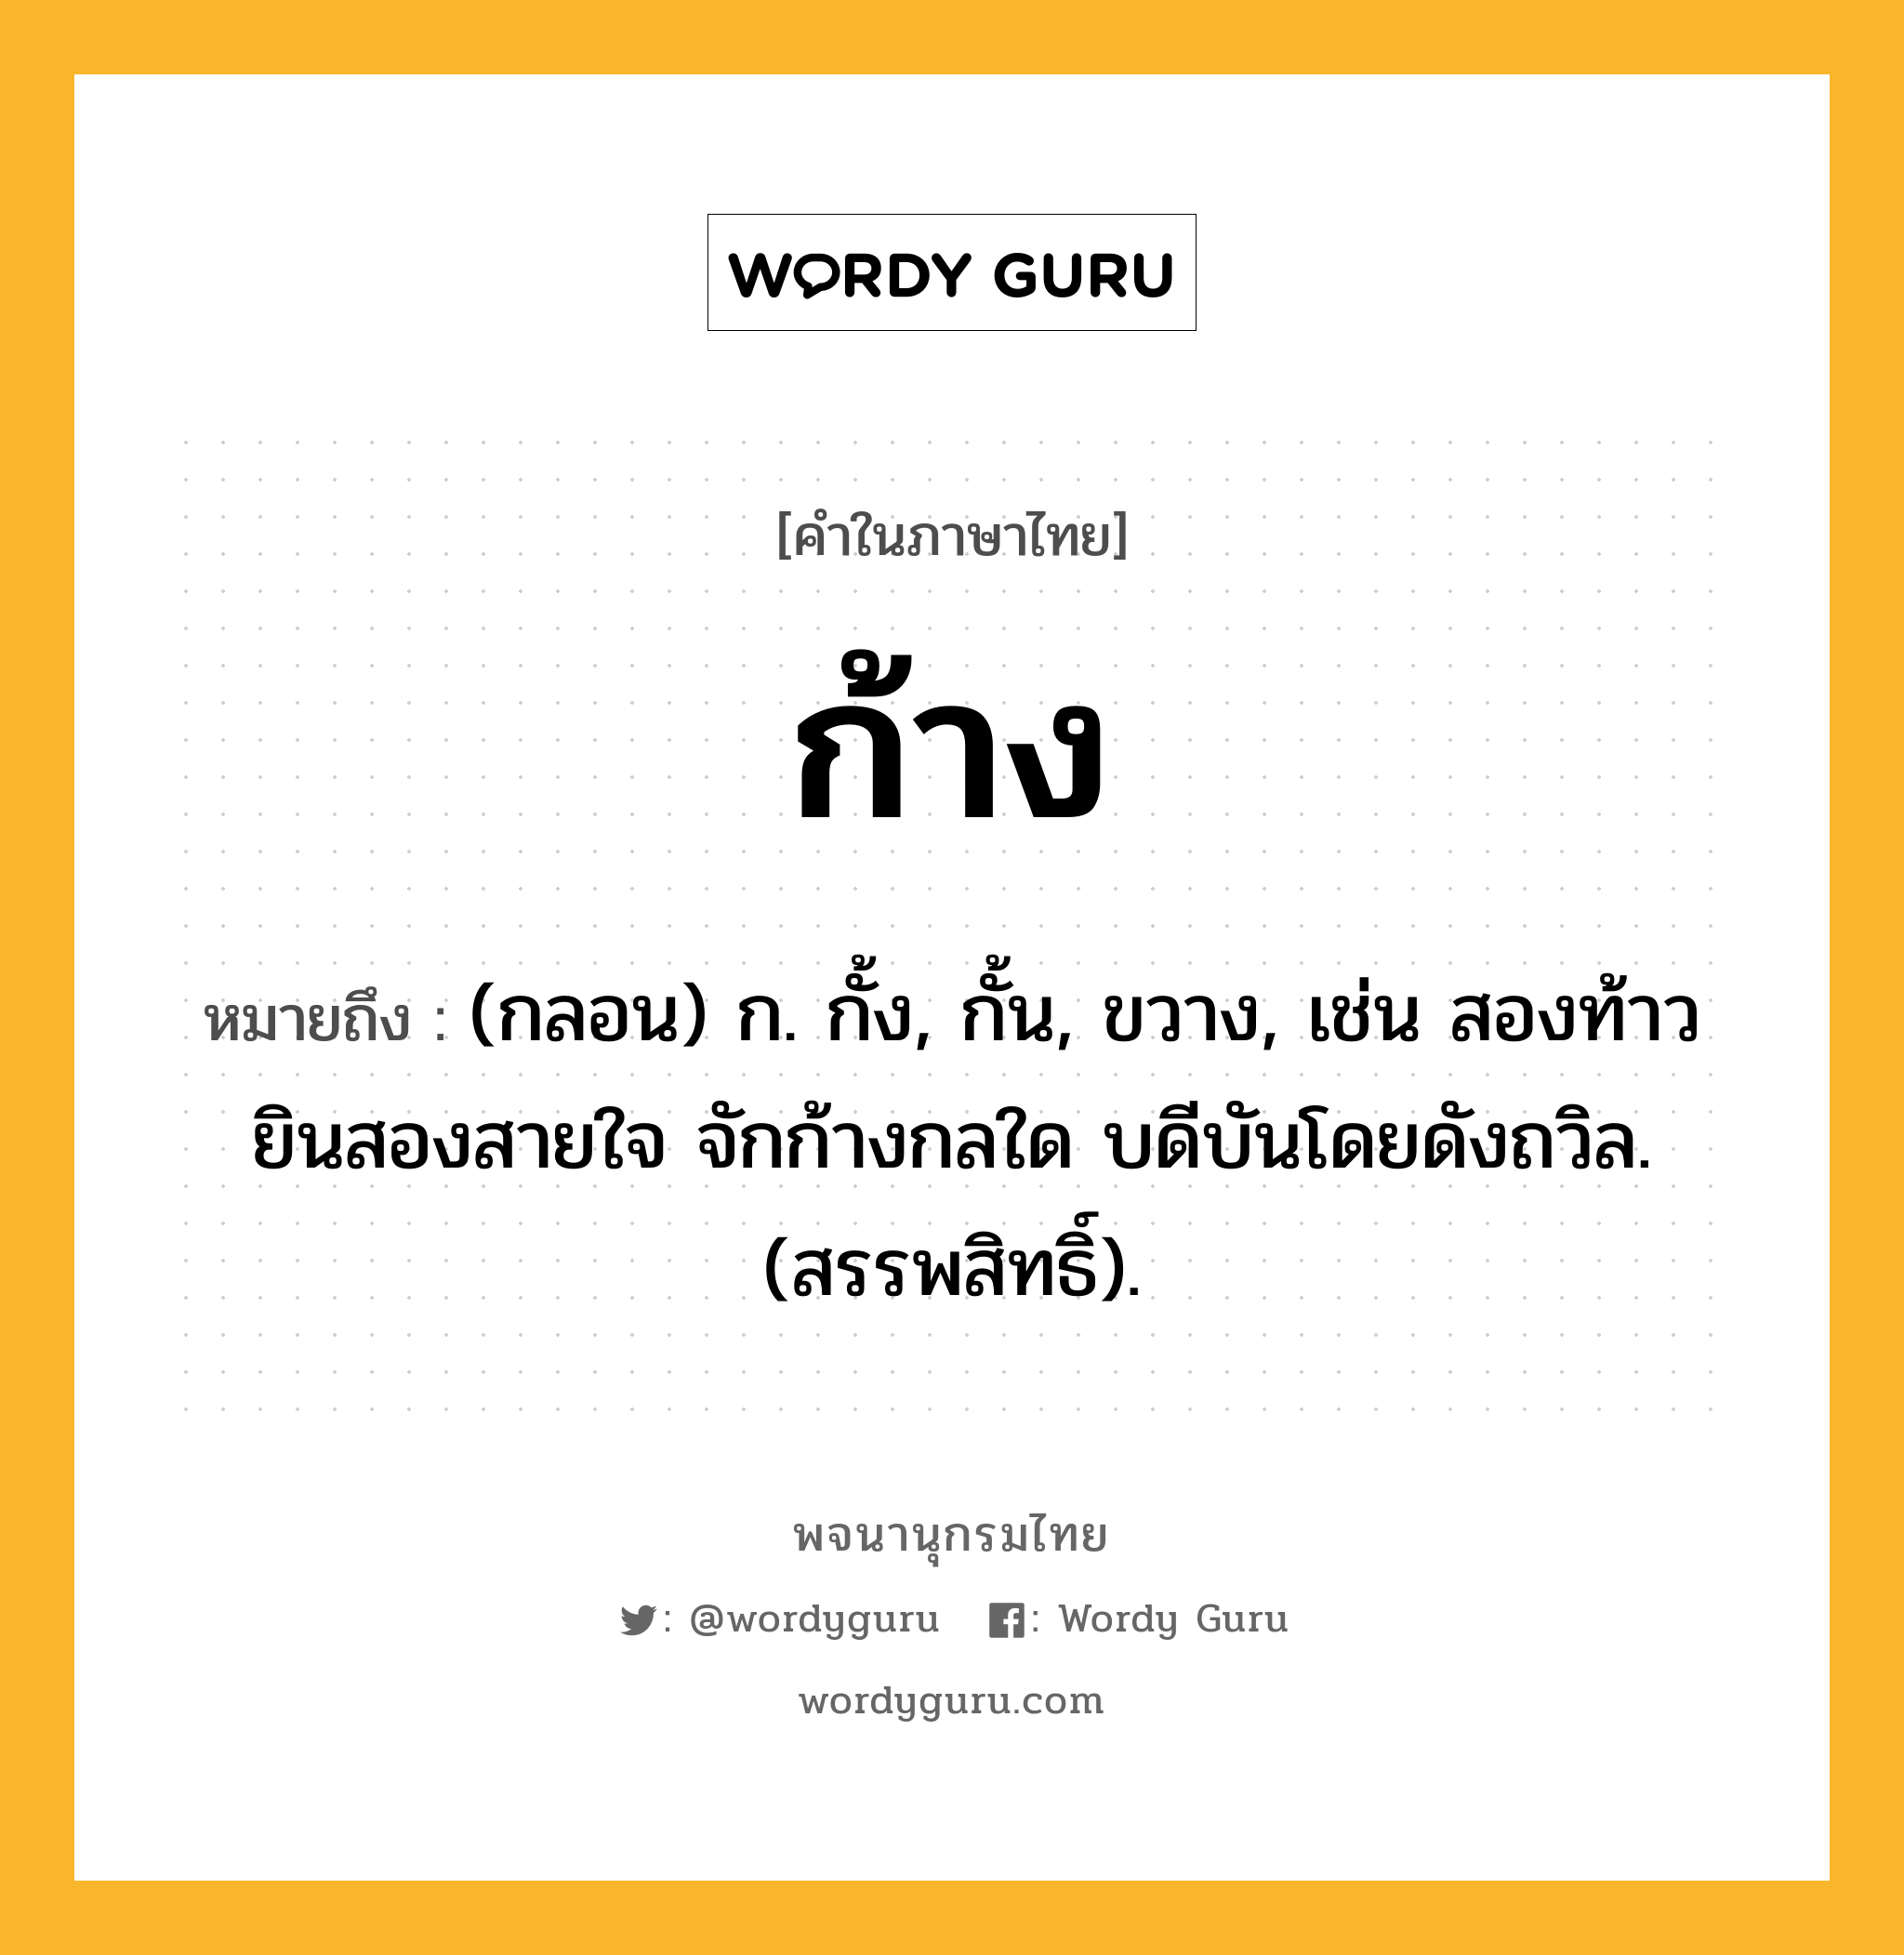 ก้าง ความหมาย หมายถึงอะไร?, คำในภาษาไทย ก้าง หมายถึง (กลอน) ก. กั้ง, กั้น, ขวาง, เช่น สองท้าวยินสองสายใจ จักก้างกลใด บดีบันโดยดังถวิล. (สรรพสิทธิ์).